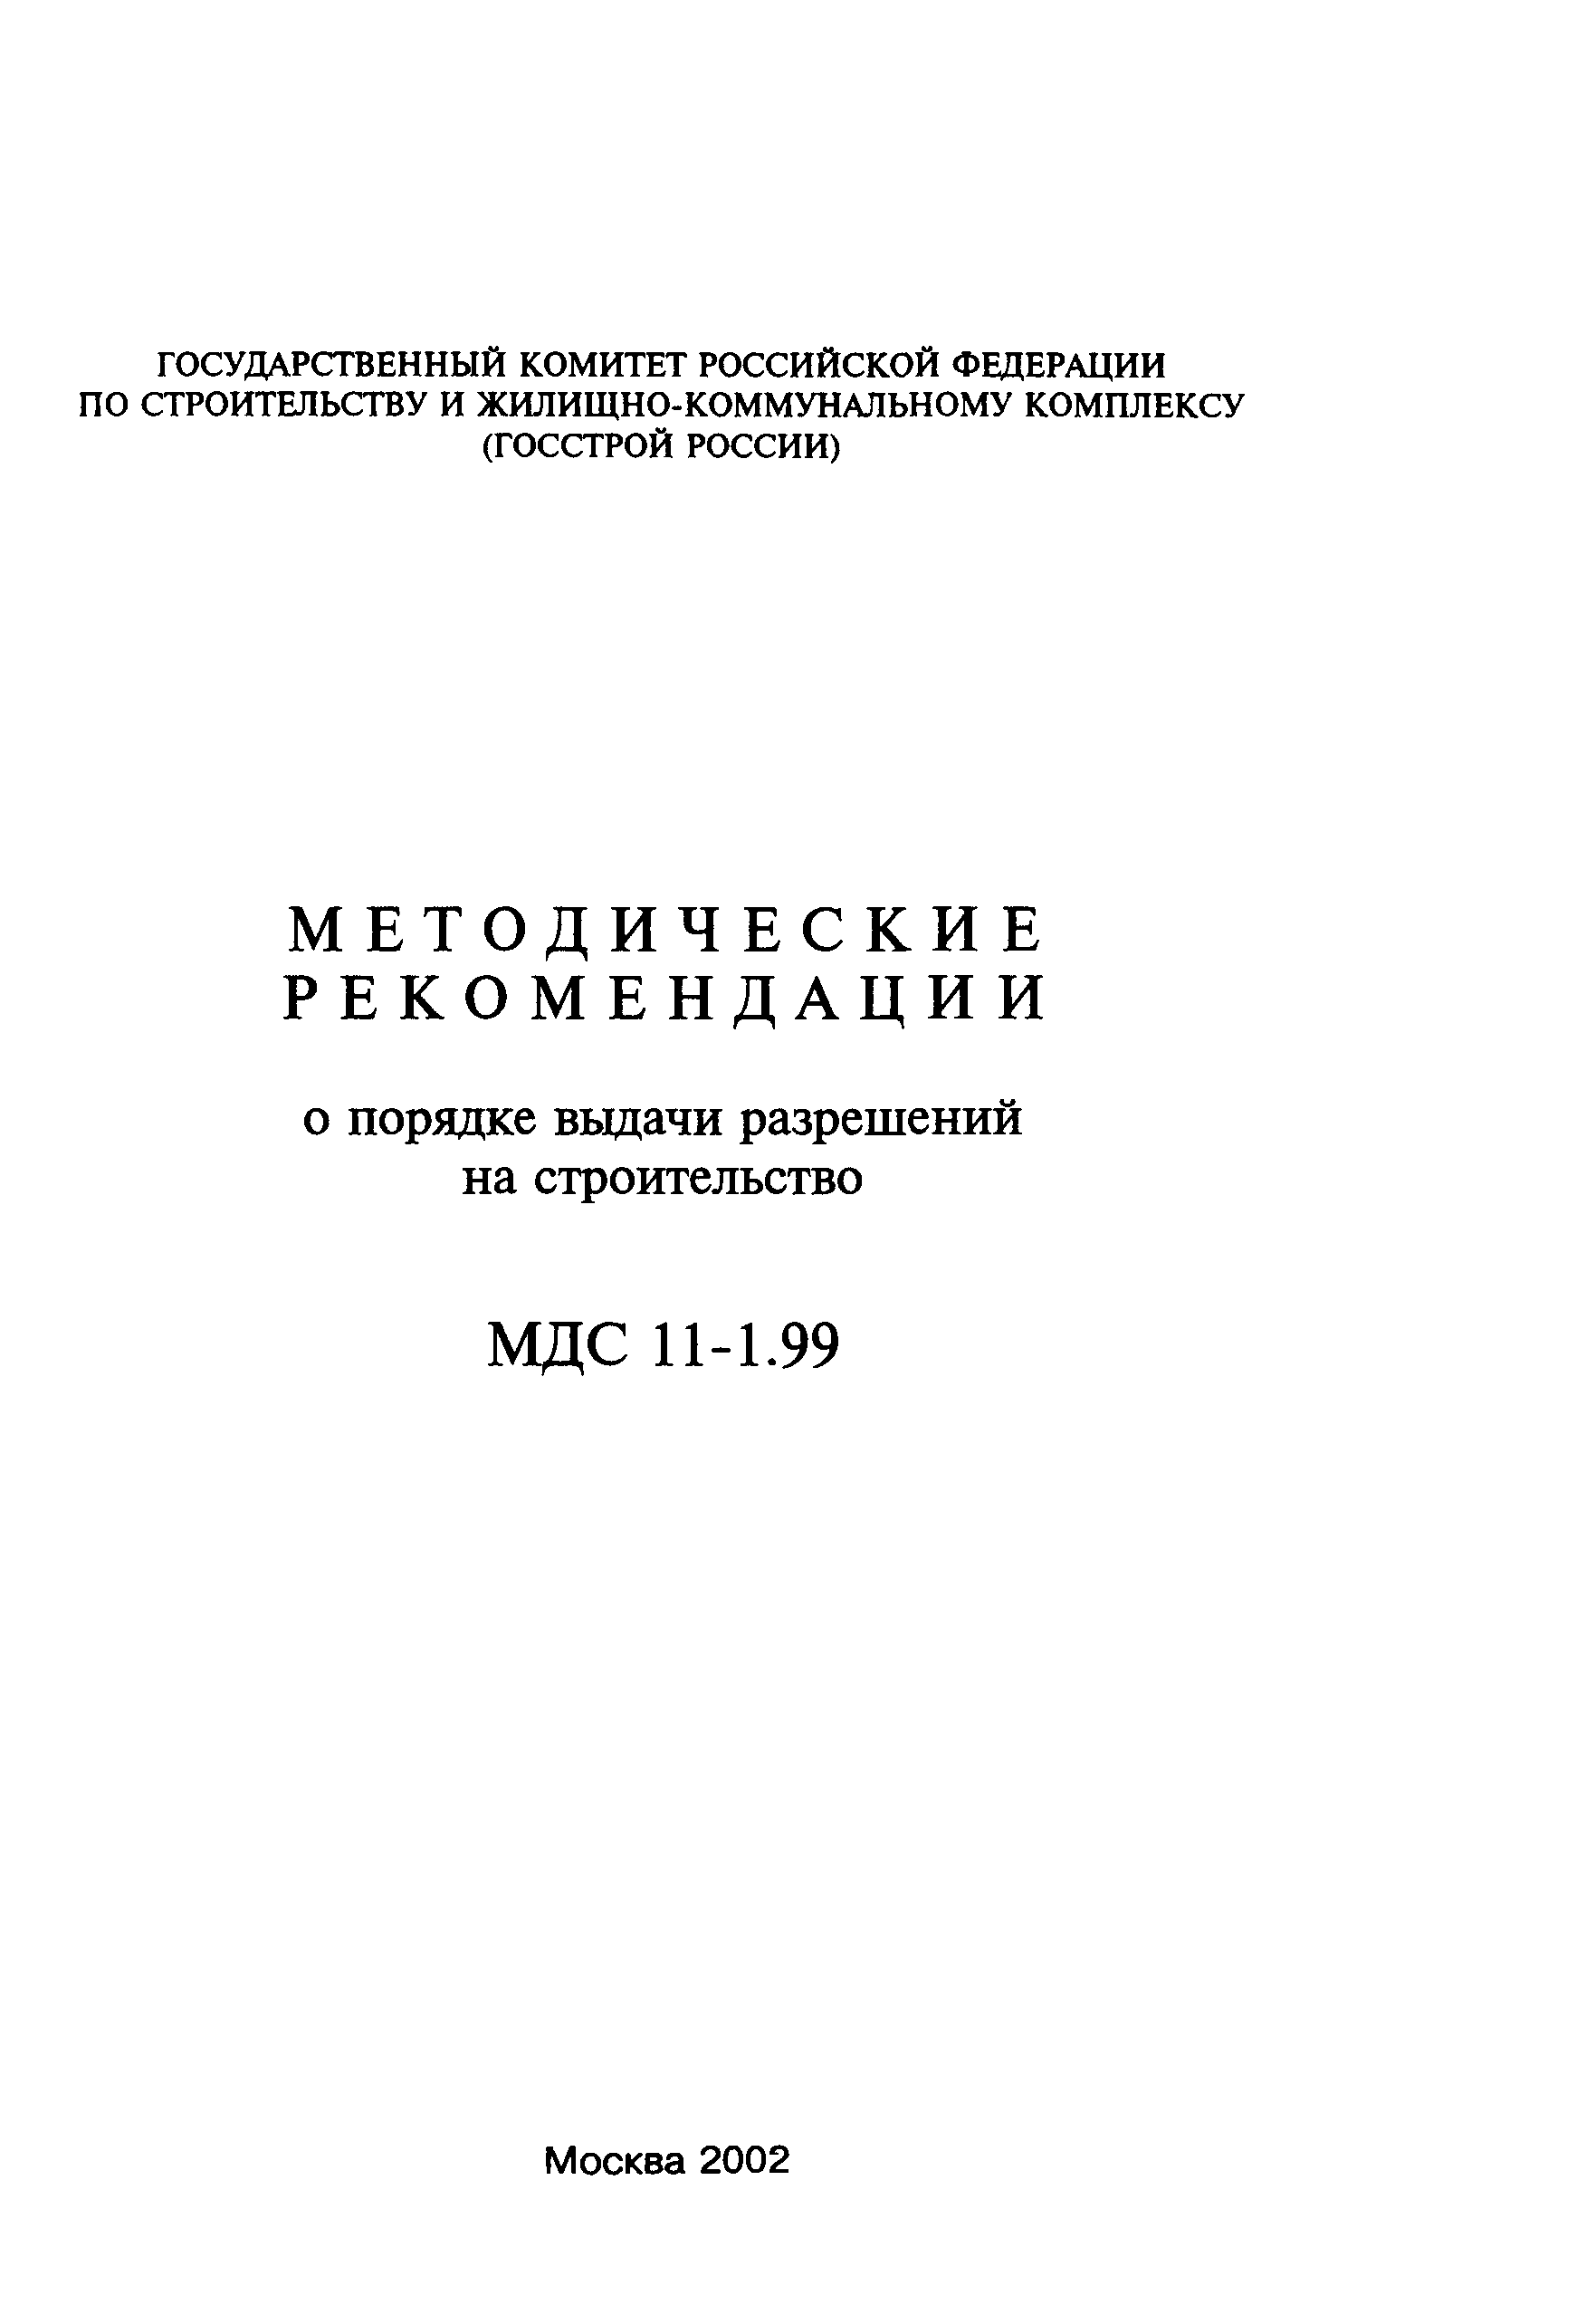 МДС 11-1.99